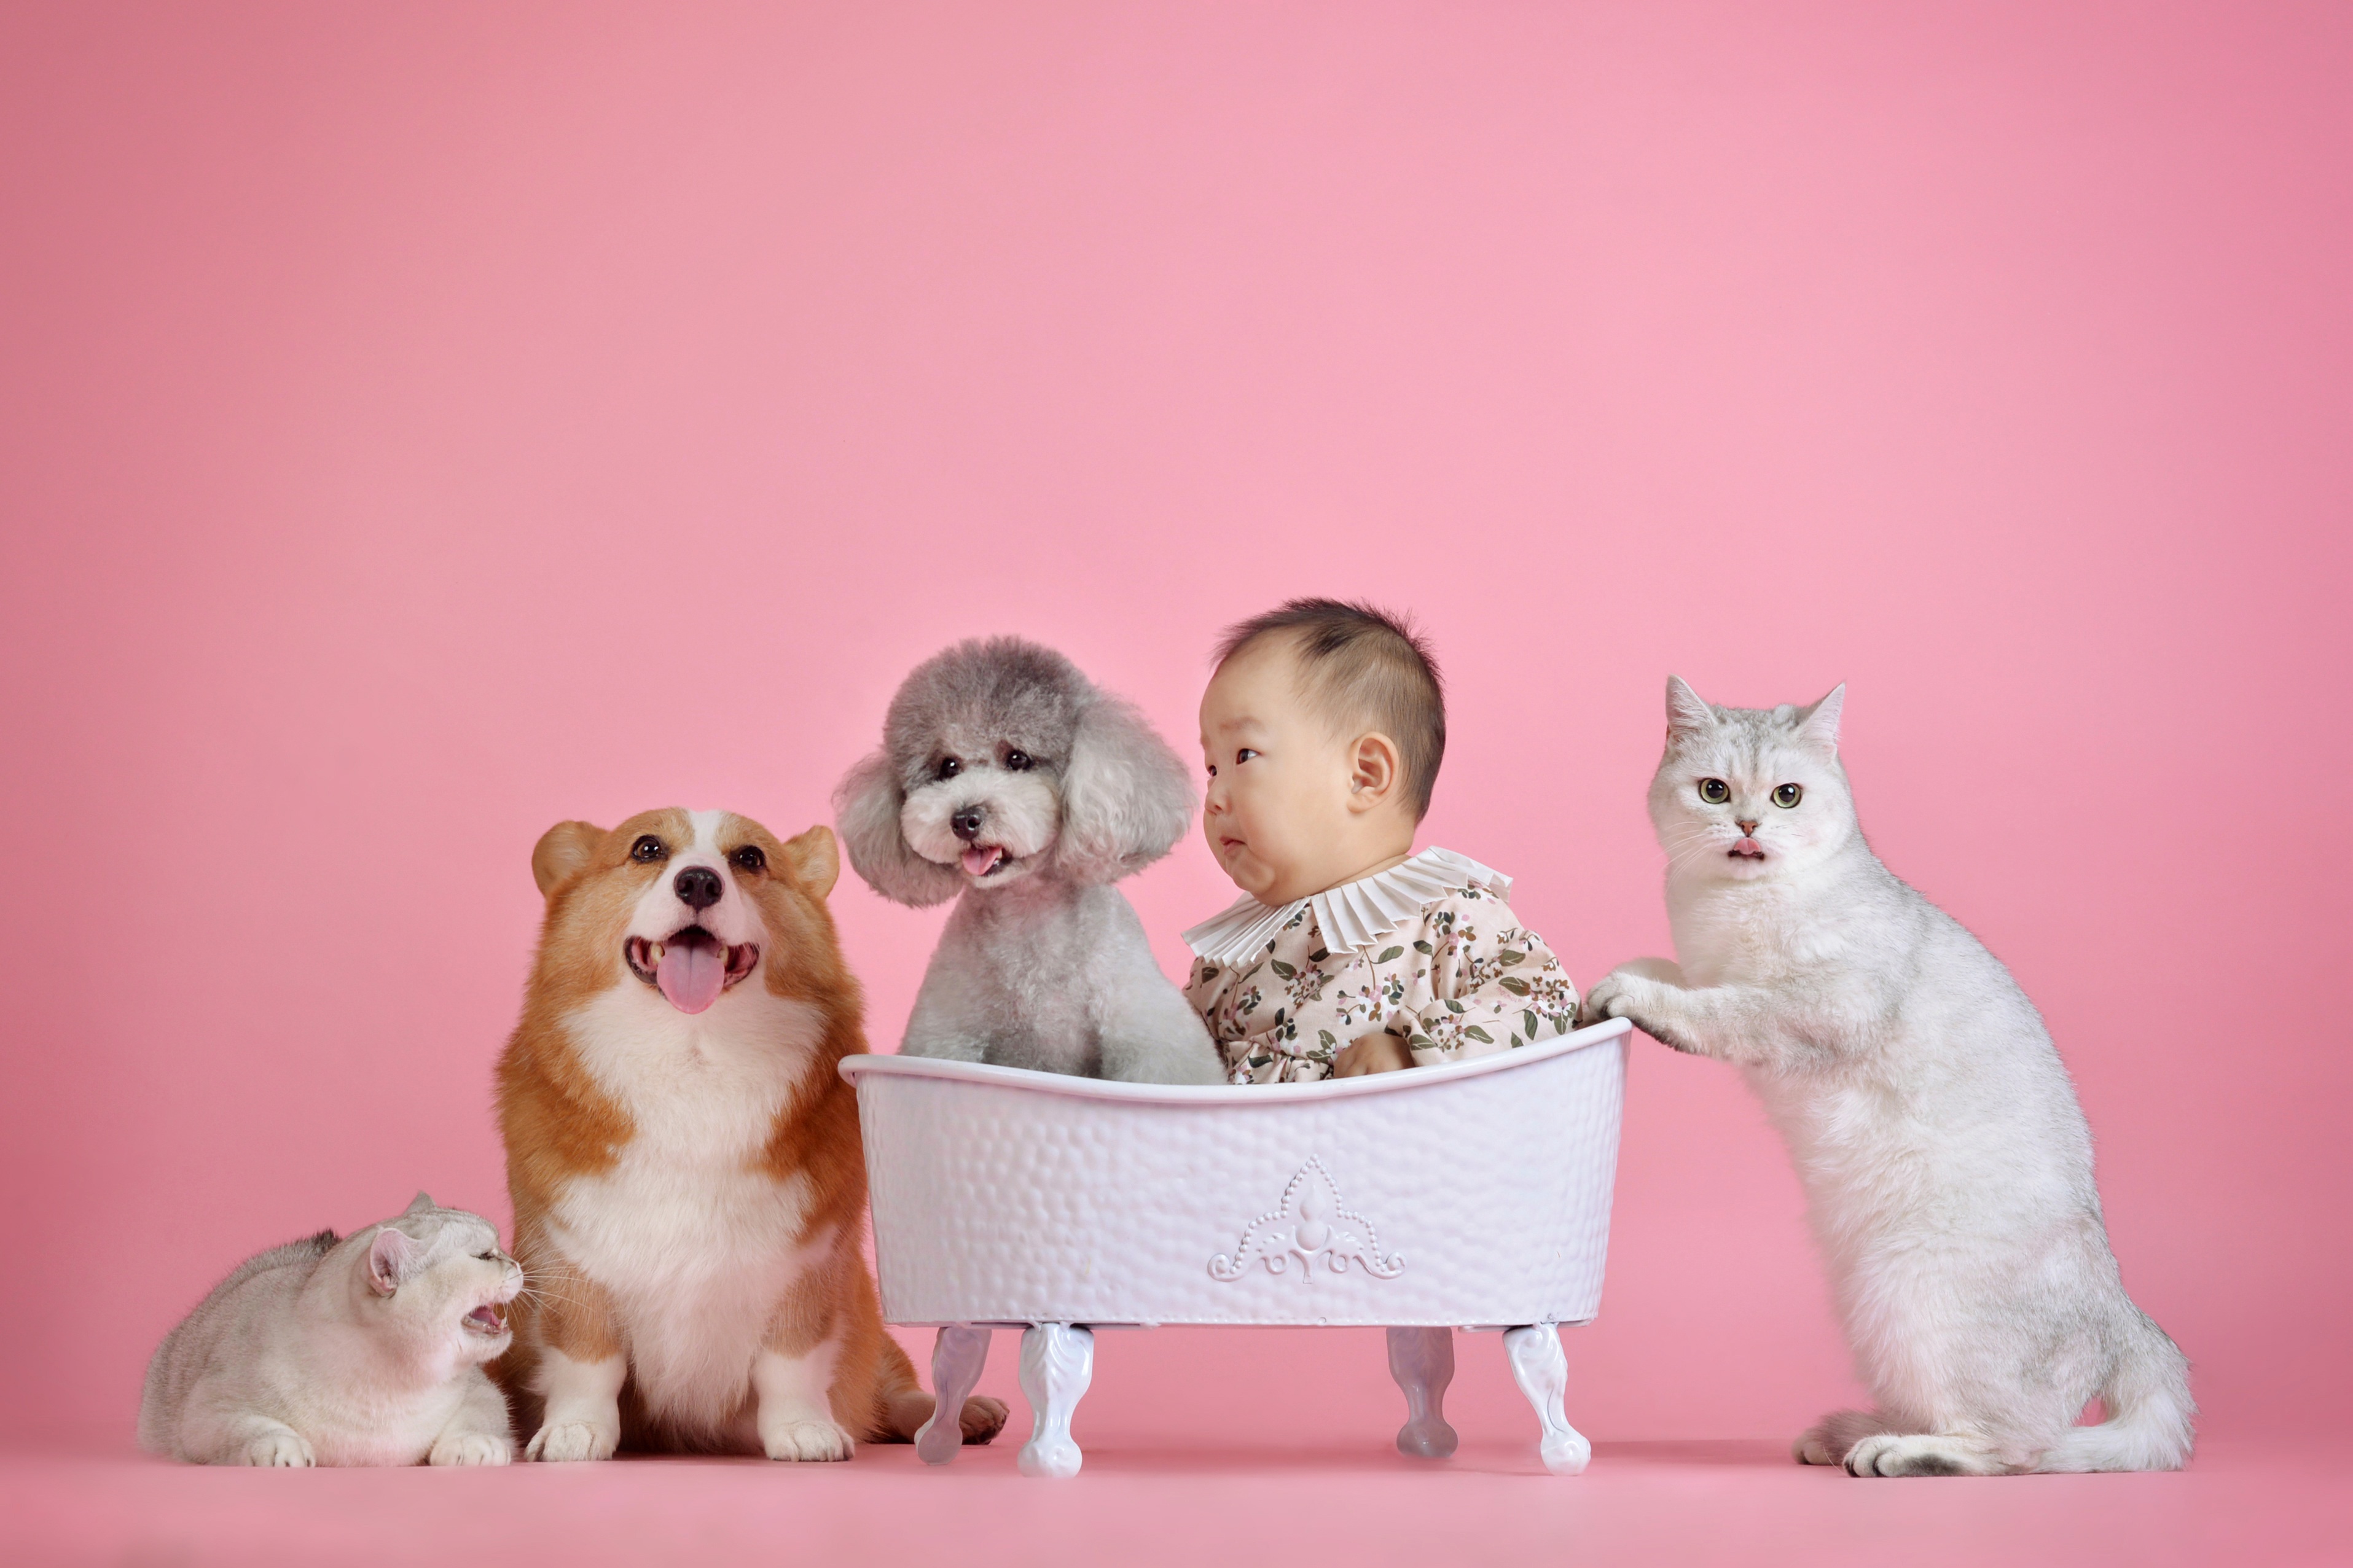 Фотография пудели грудной ребёнок Кошки Собаки Розовый фон ребёнок Азиаты Вельш-корги пуделя Пудель Младенцы младенец младенца кот коты кошка собака Дети азиатки азиатка